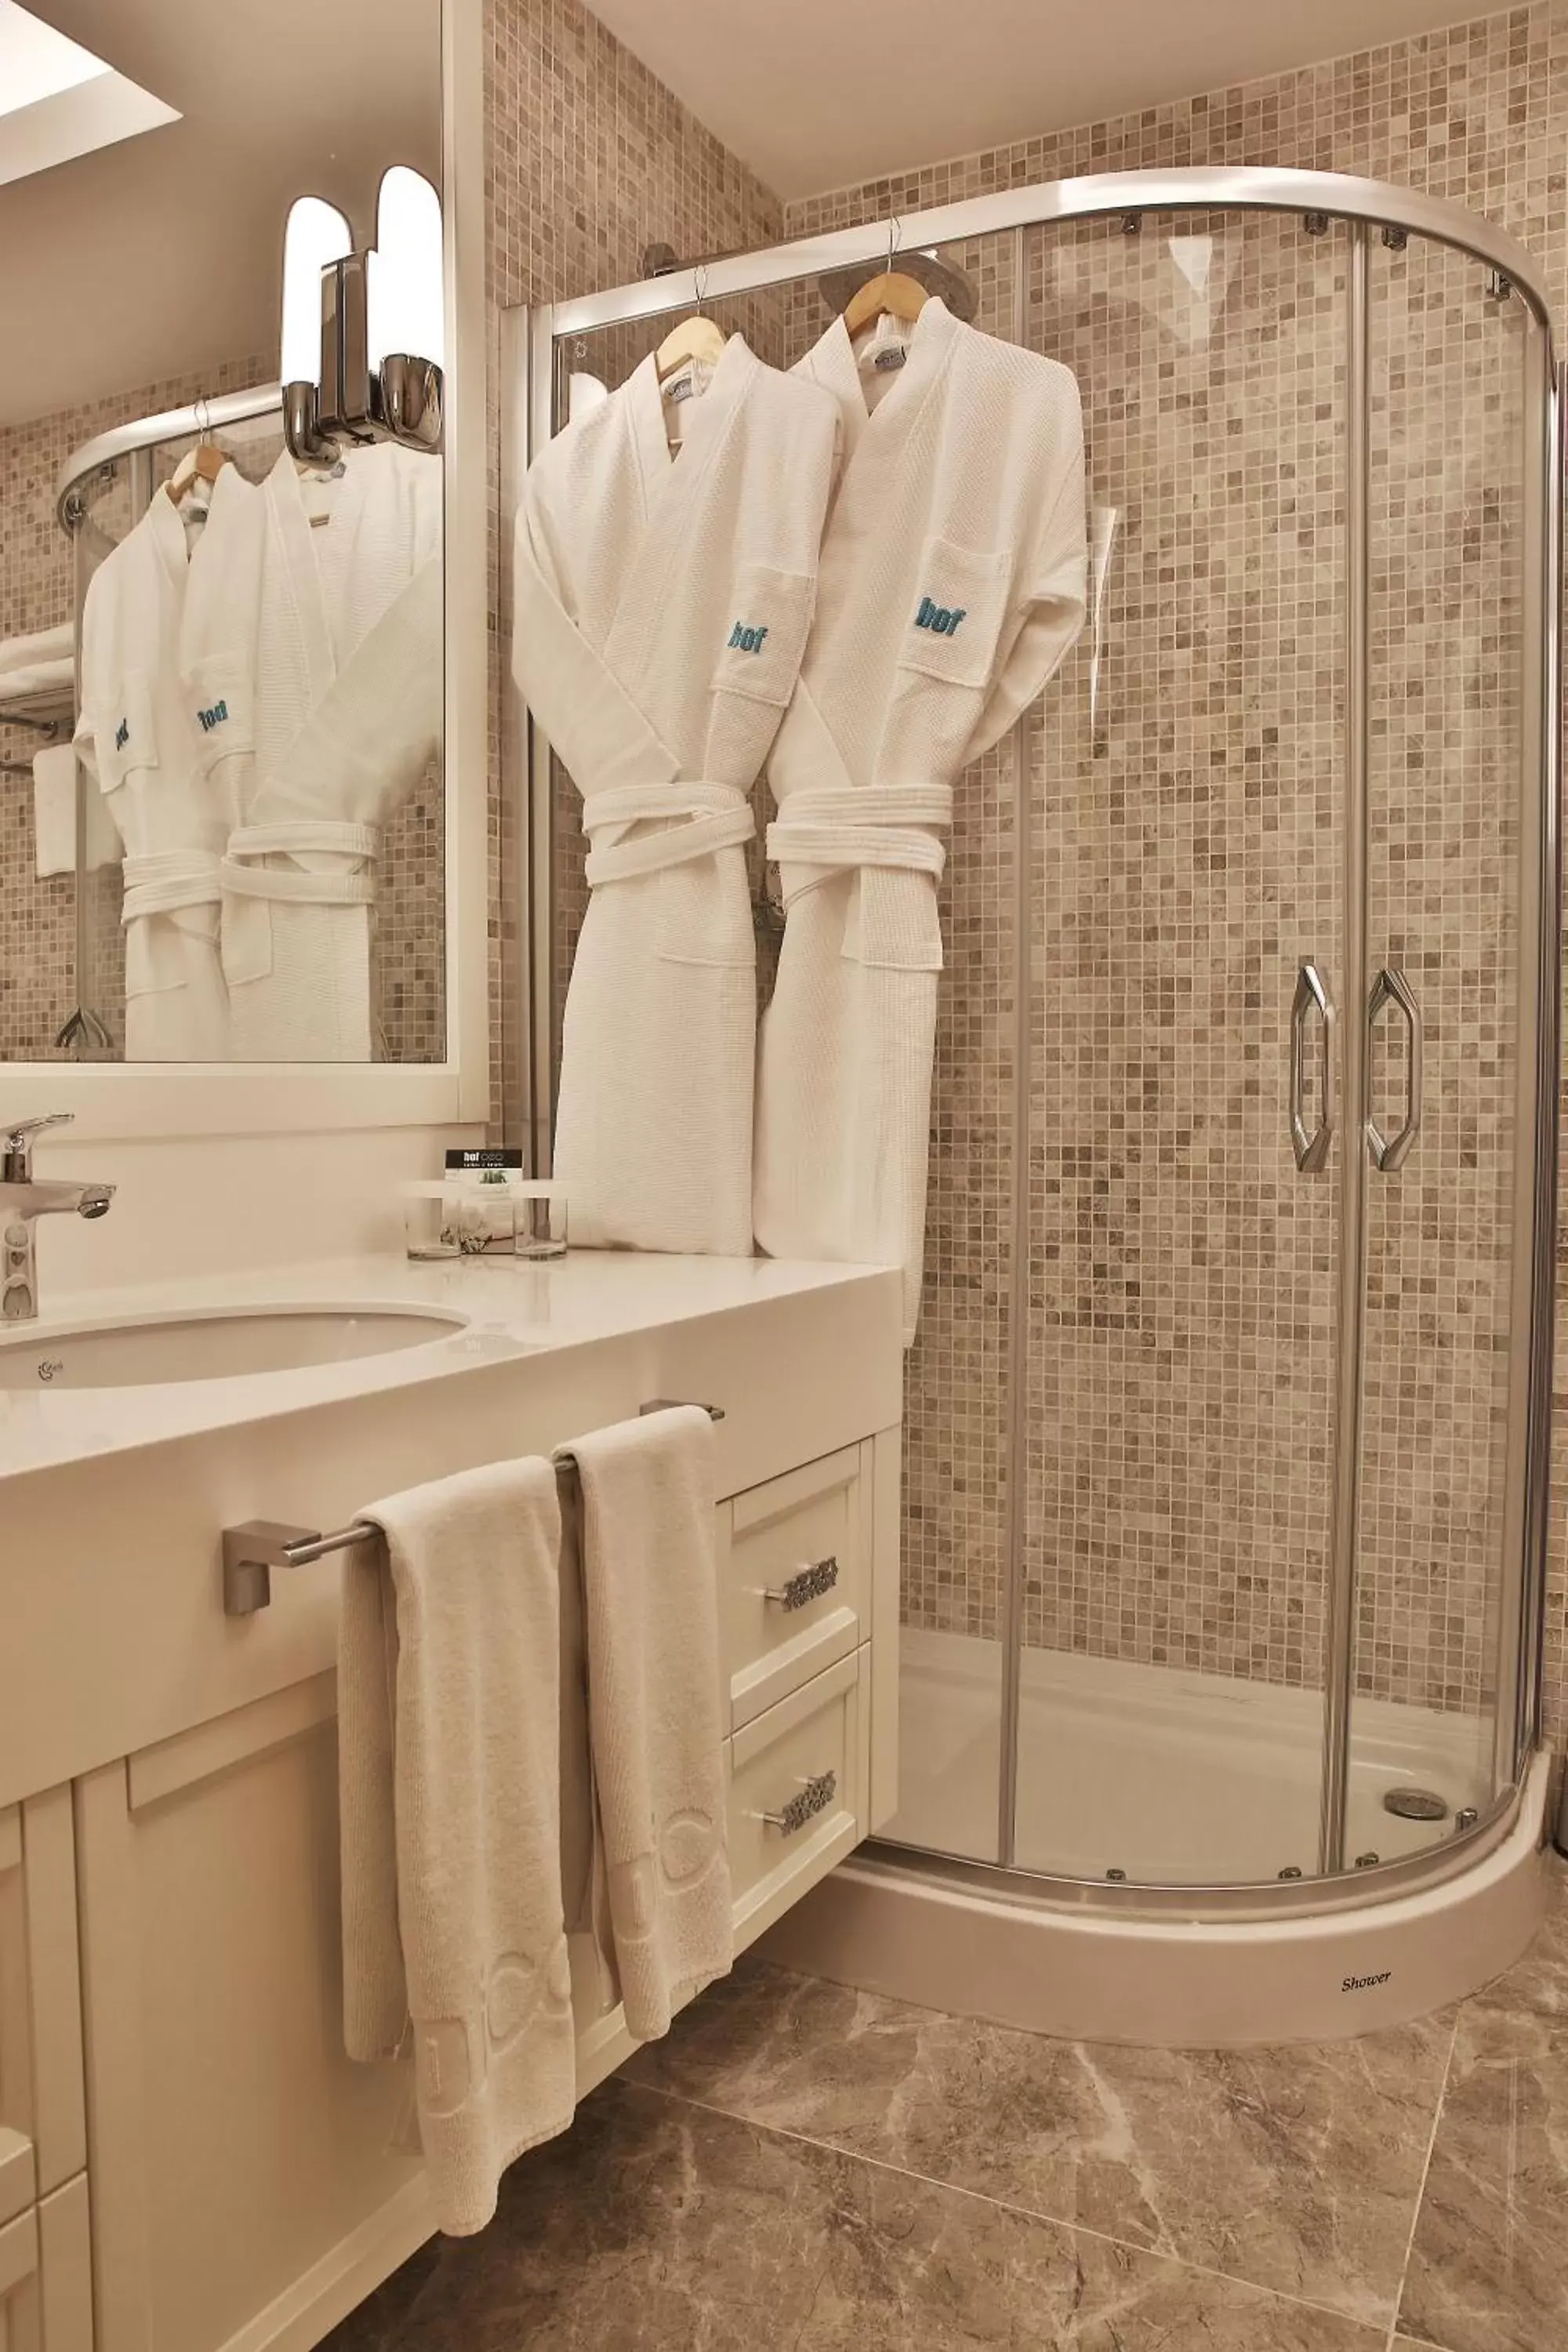 Shower, Bathroom in Bof Hotels Ceo Suites Atasehir